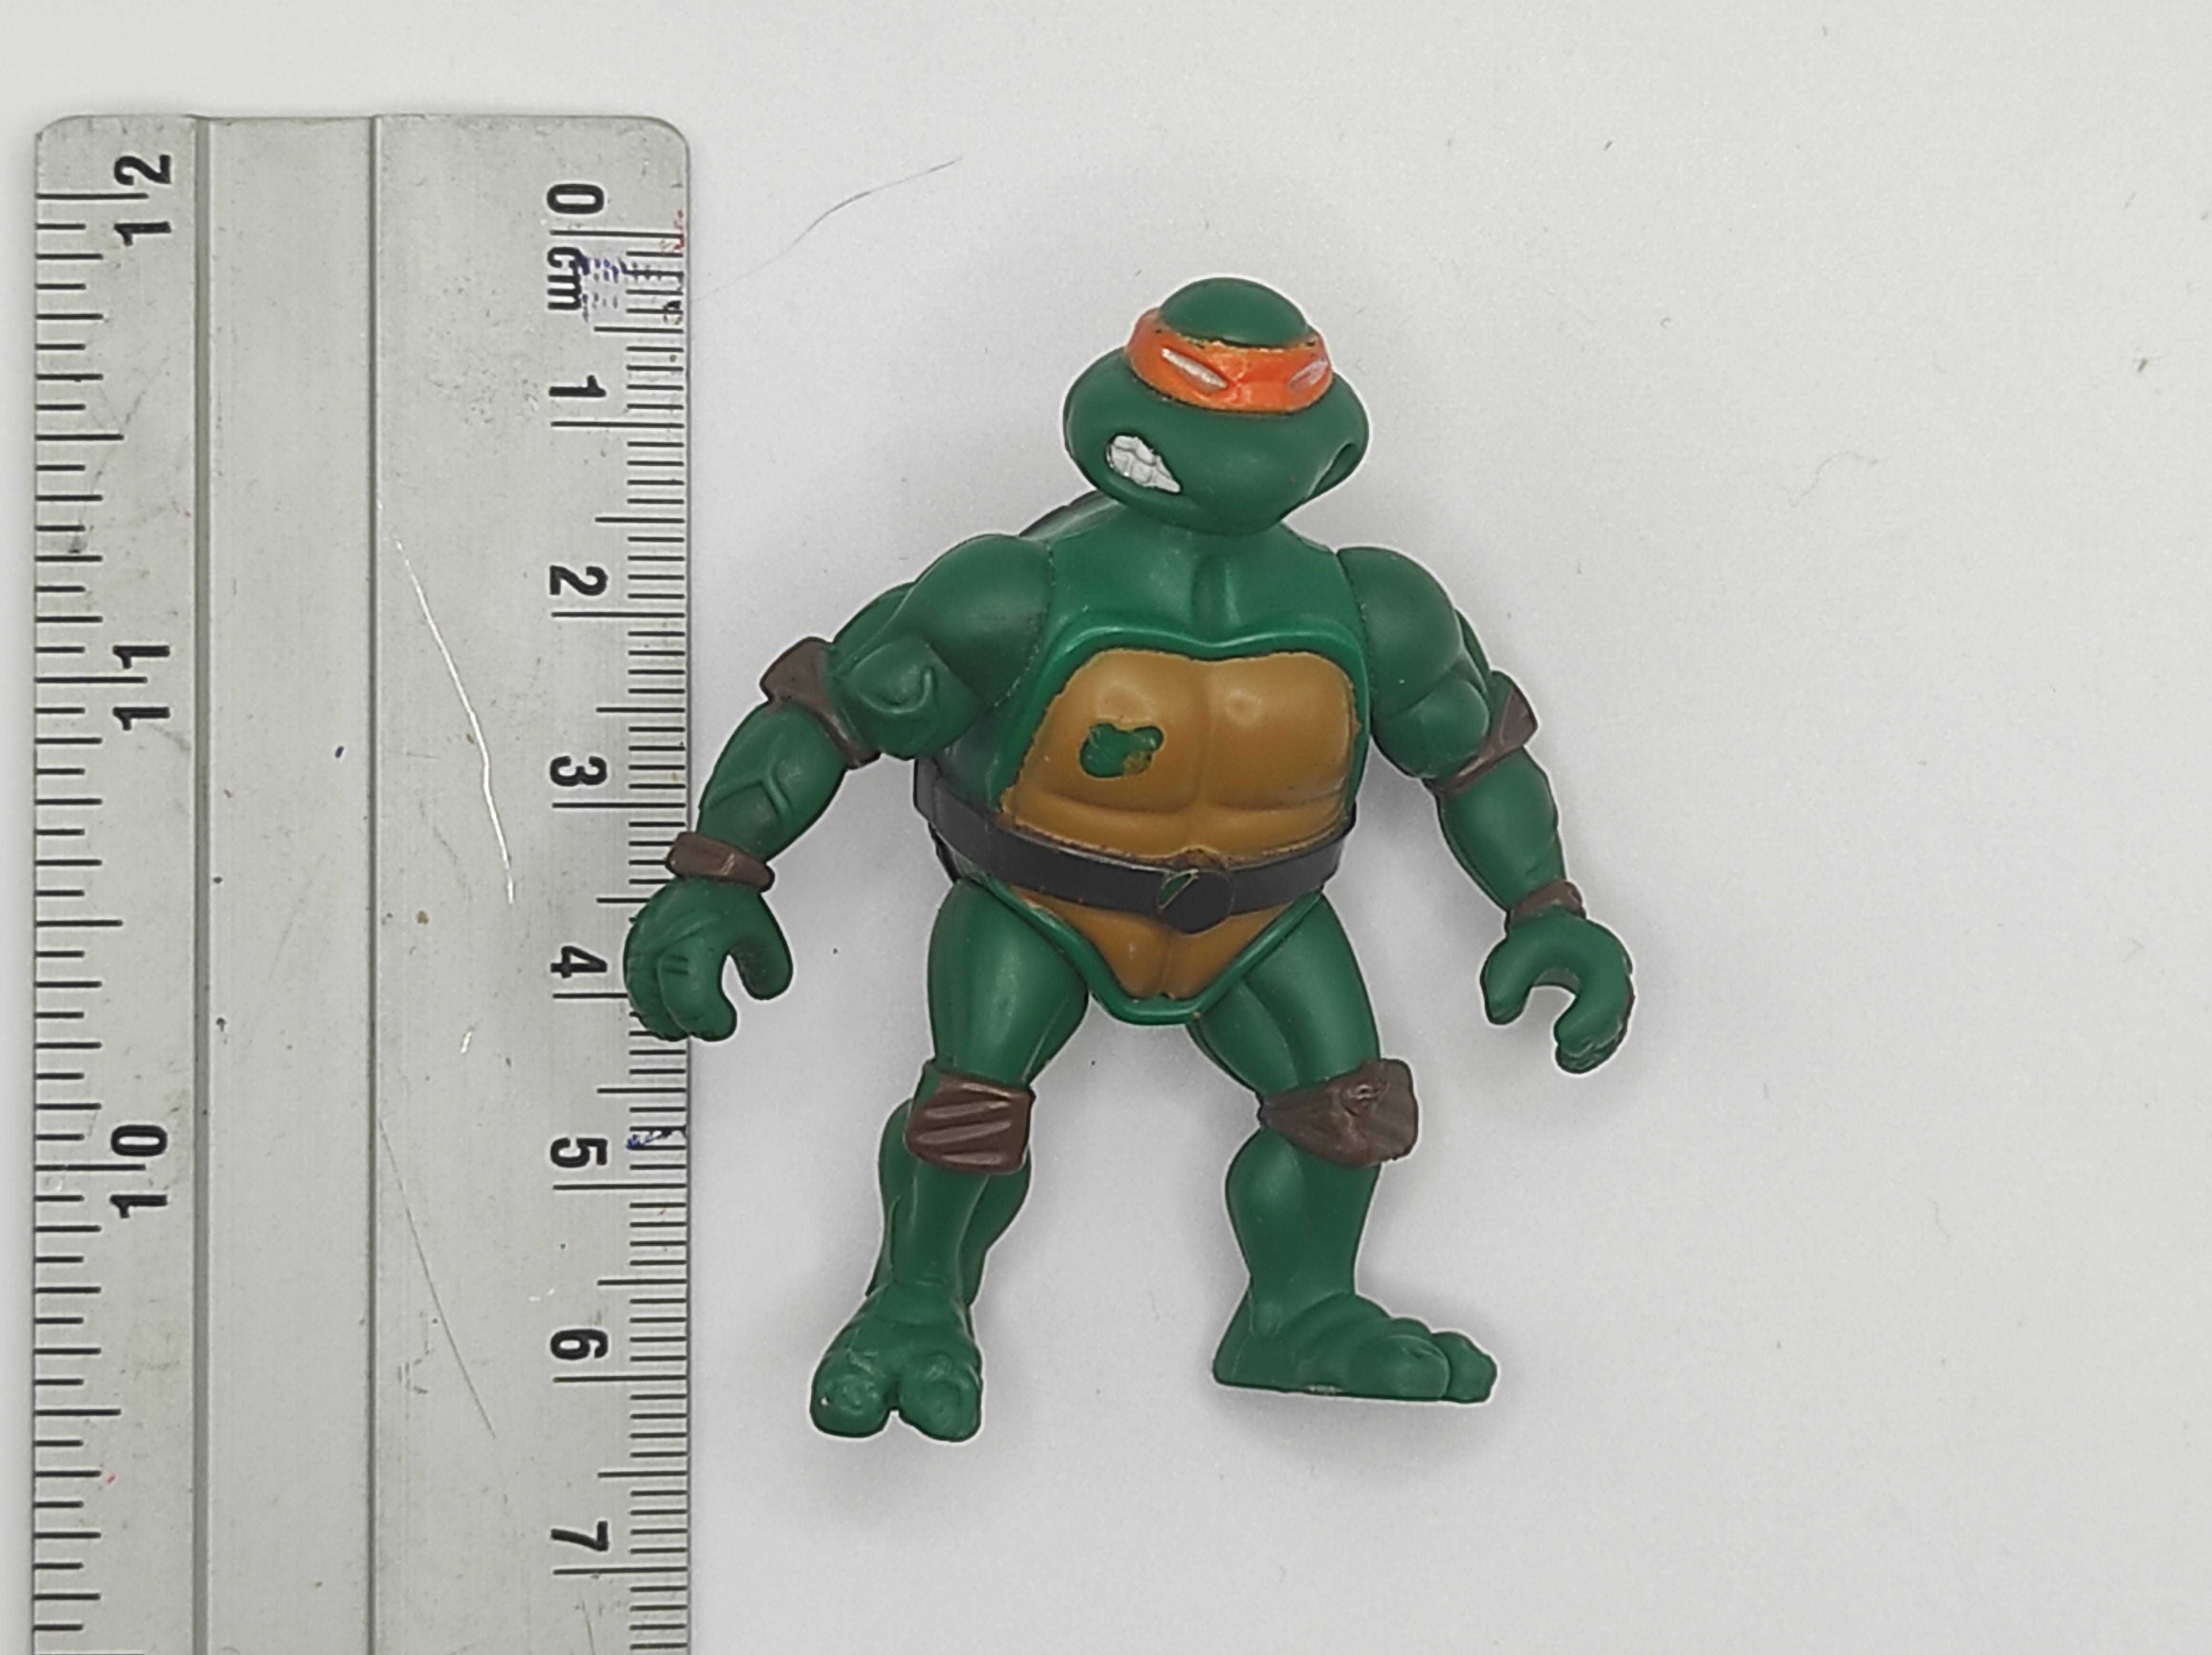 Wojownicze Żółwie Ninja figurka akcji 2002r. K1#27